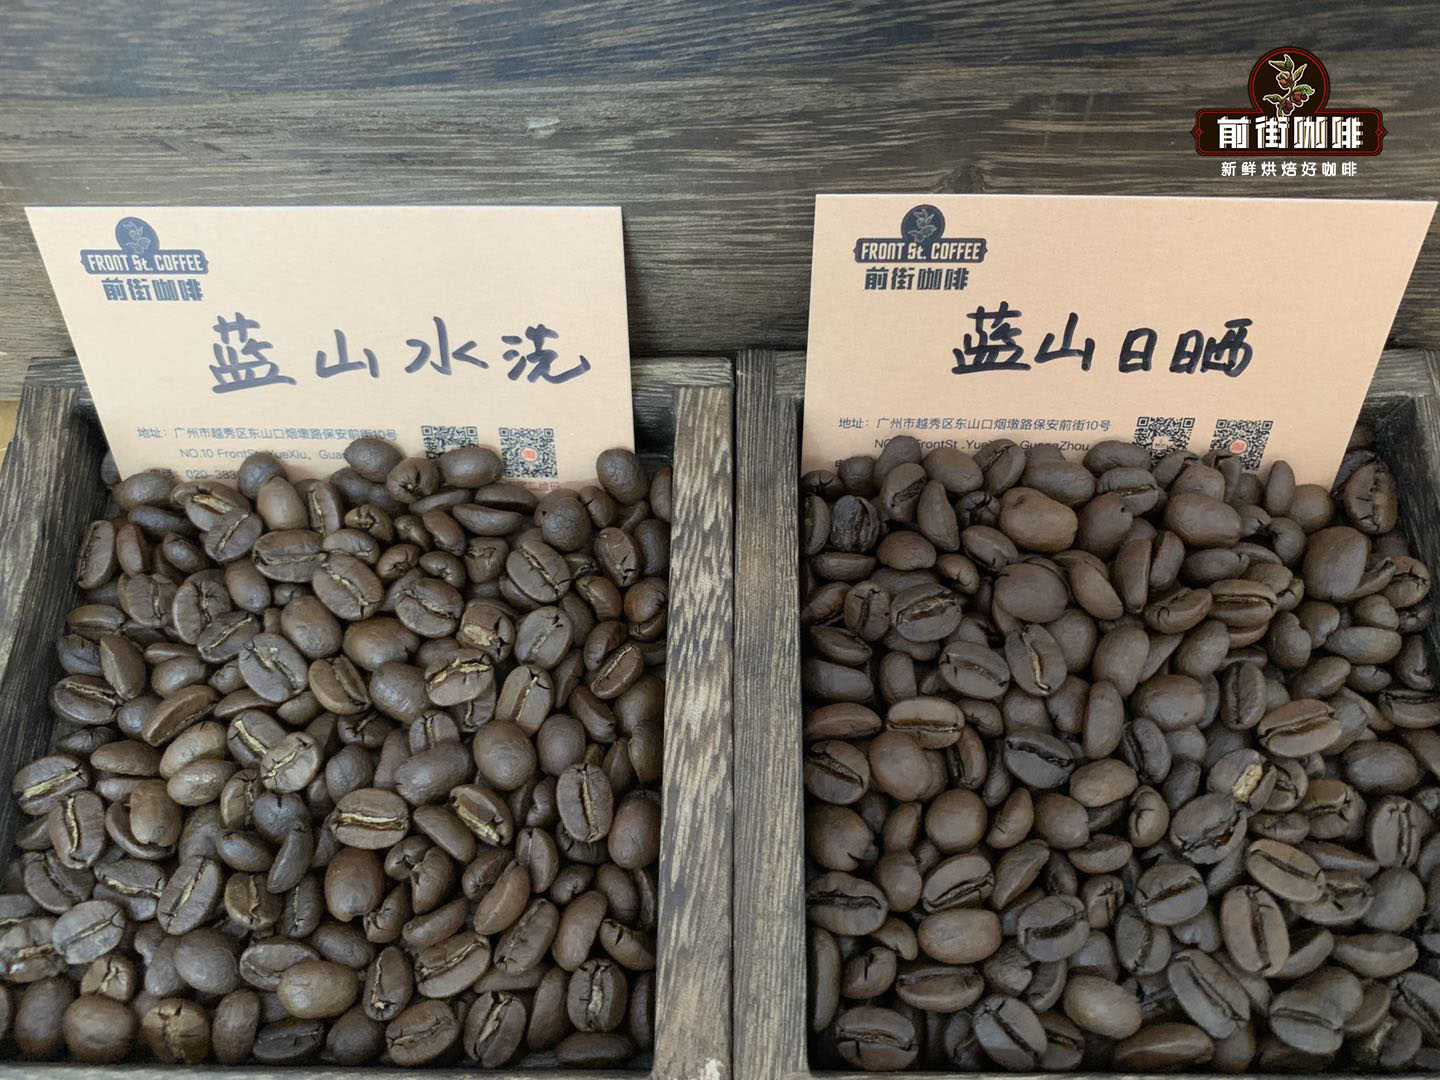 牙買加藍山咖啡歷史特點介紹 藍山頂級阿拉比卡咖啡豆風味口感描述